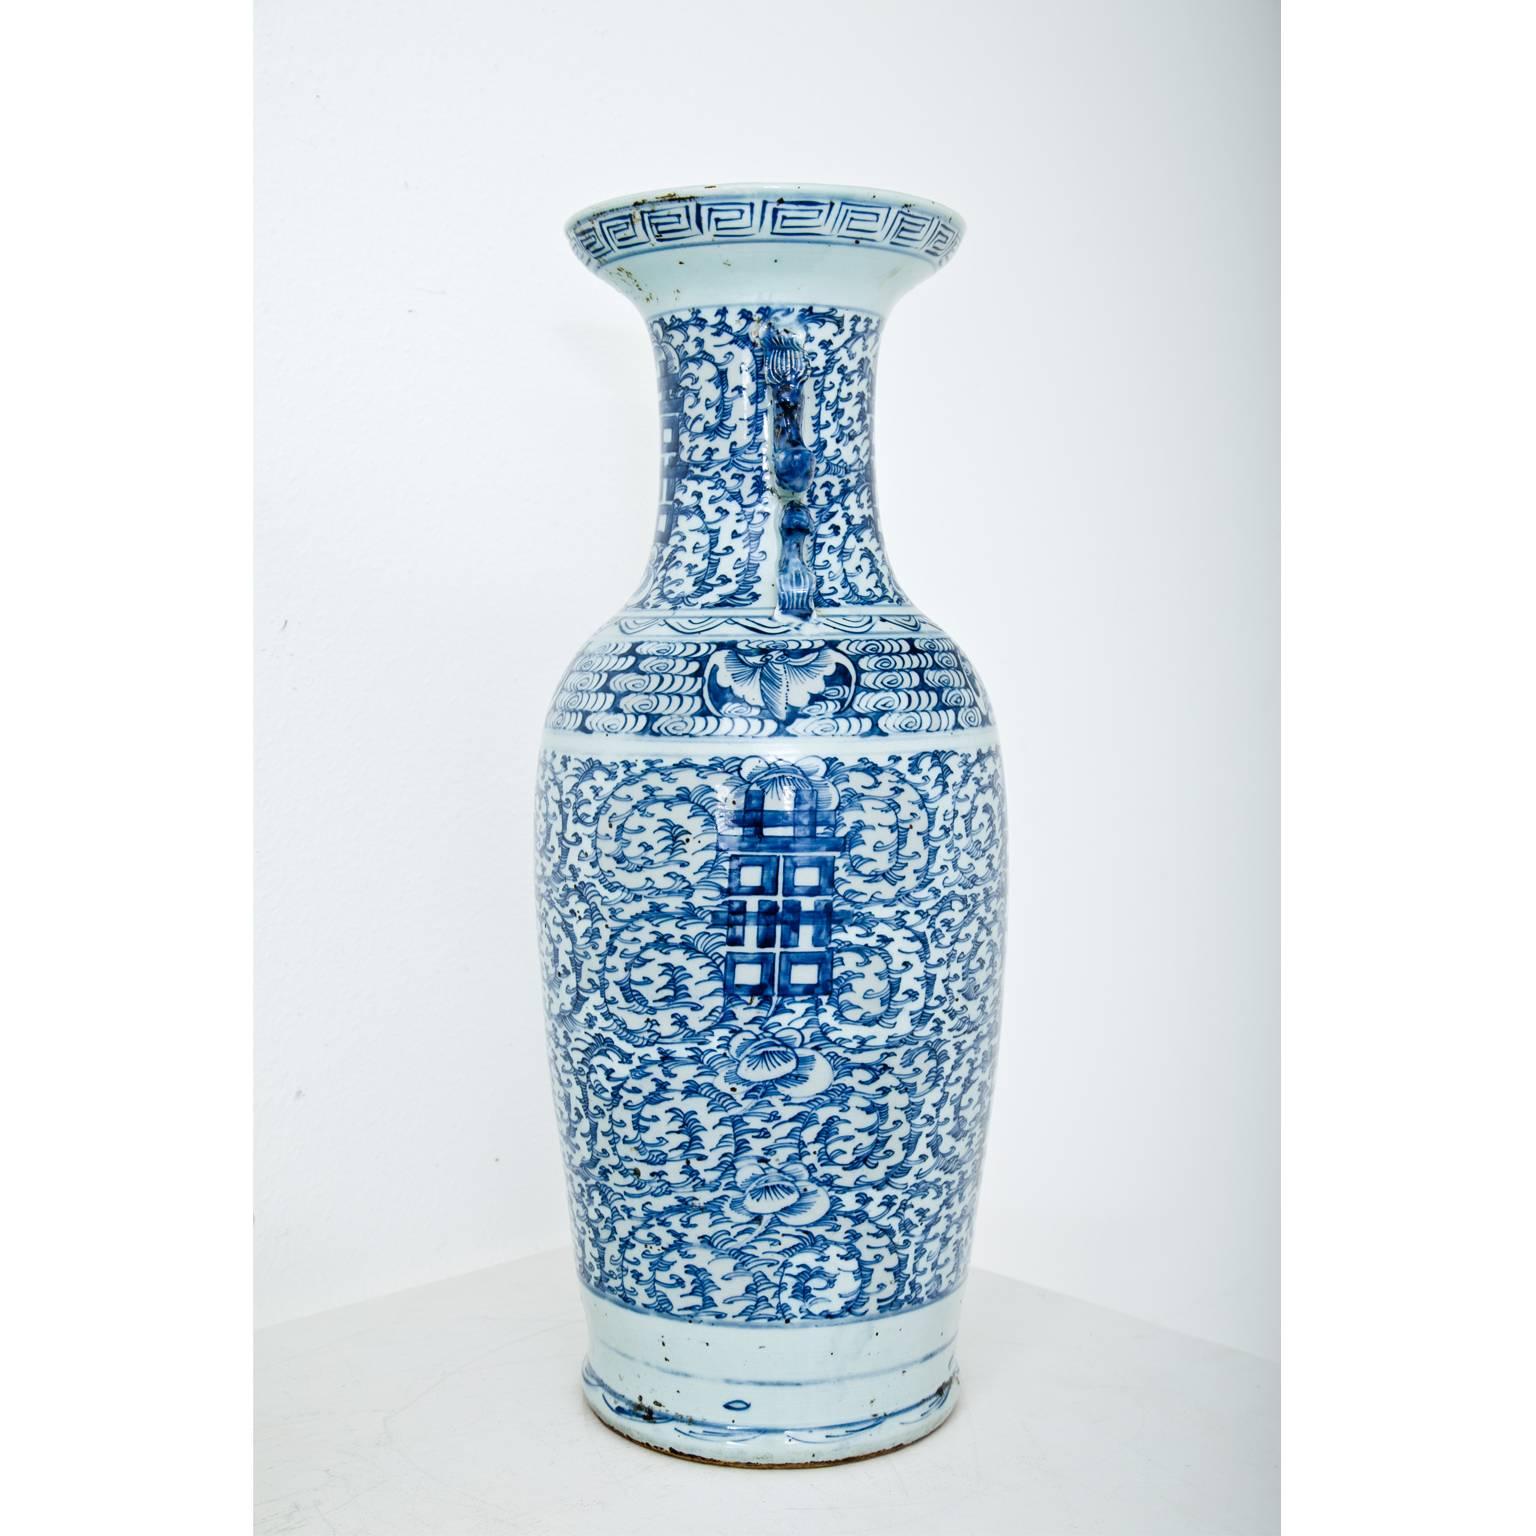 Chinesische Porzellanvase aus Porzellan, 19.-20. Jahrhundert (19. Jahrhundert)